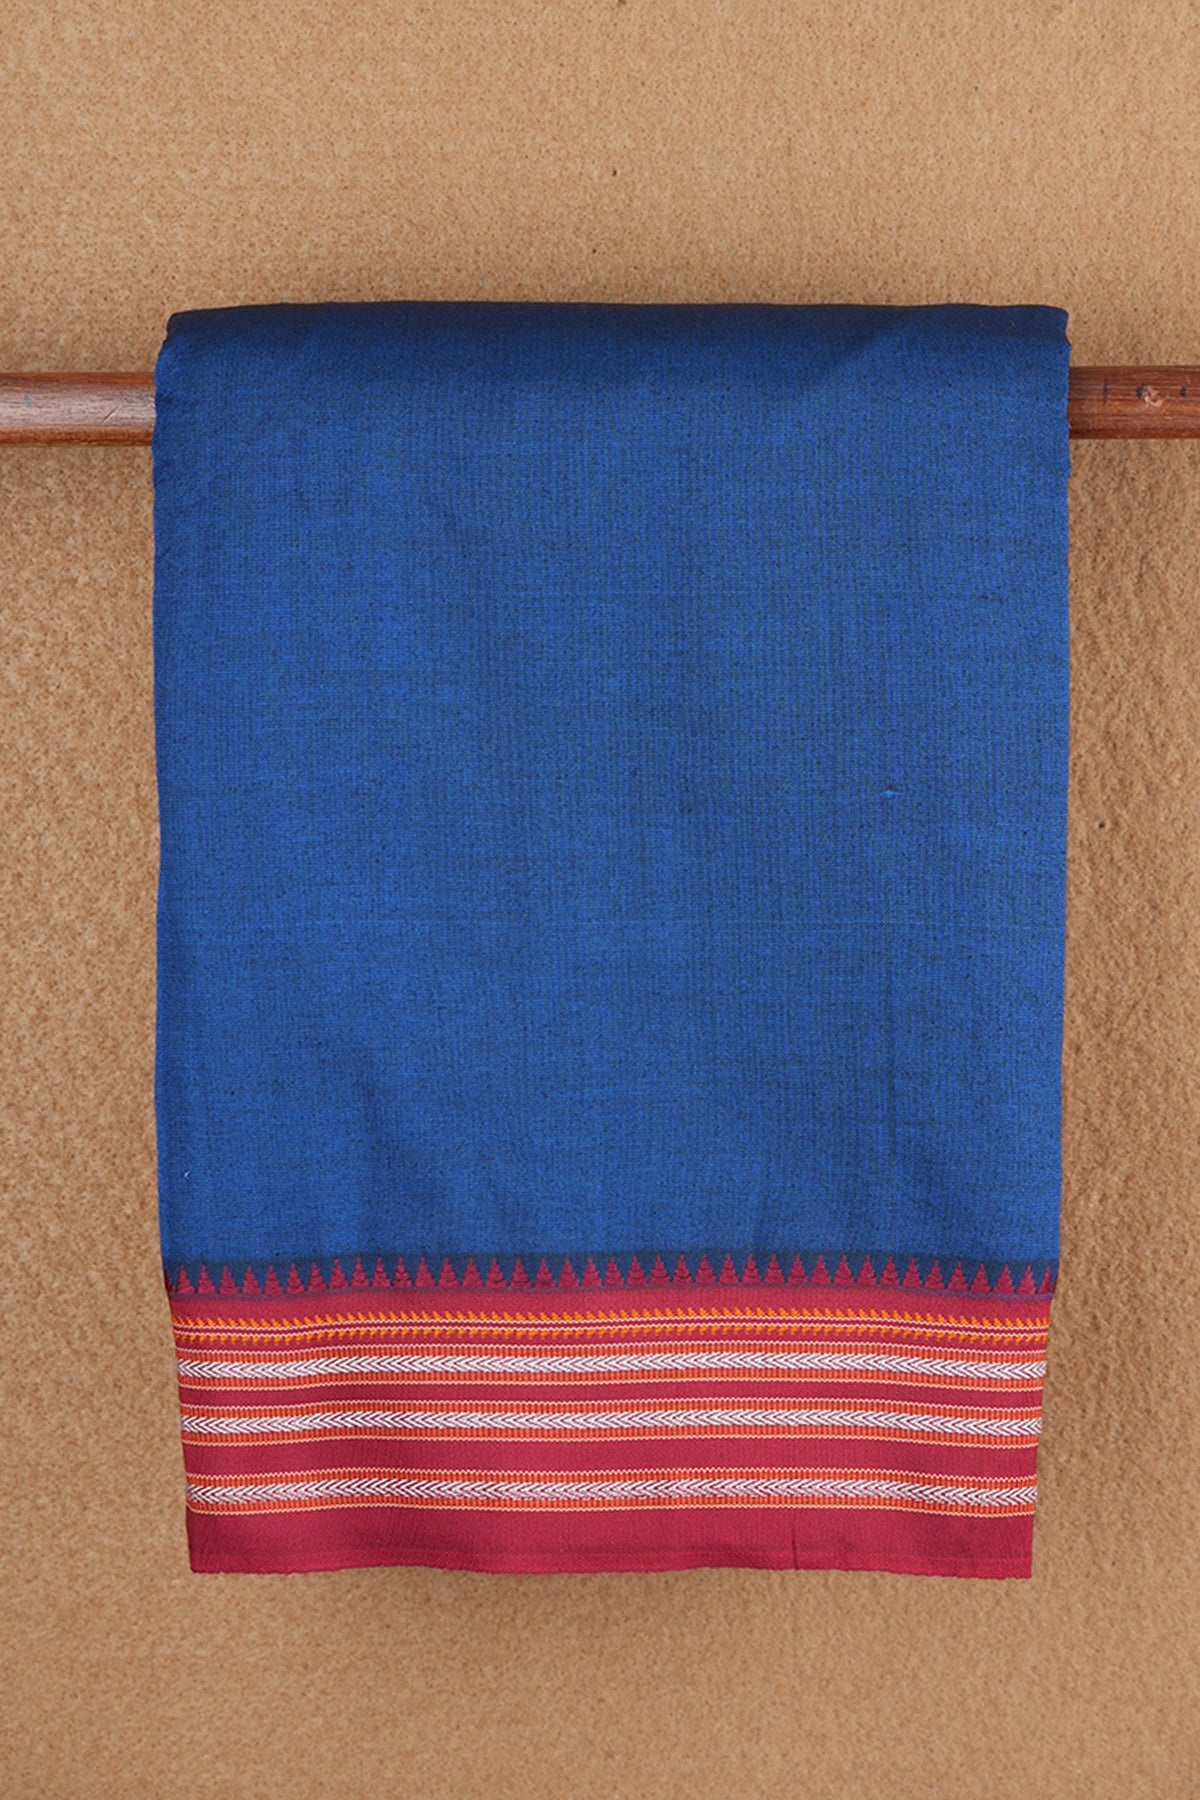 Bagudi Vanki Threadwork Border With Plain Berry Blue Dharwad Cotton Saree